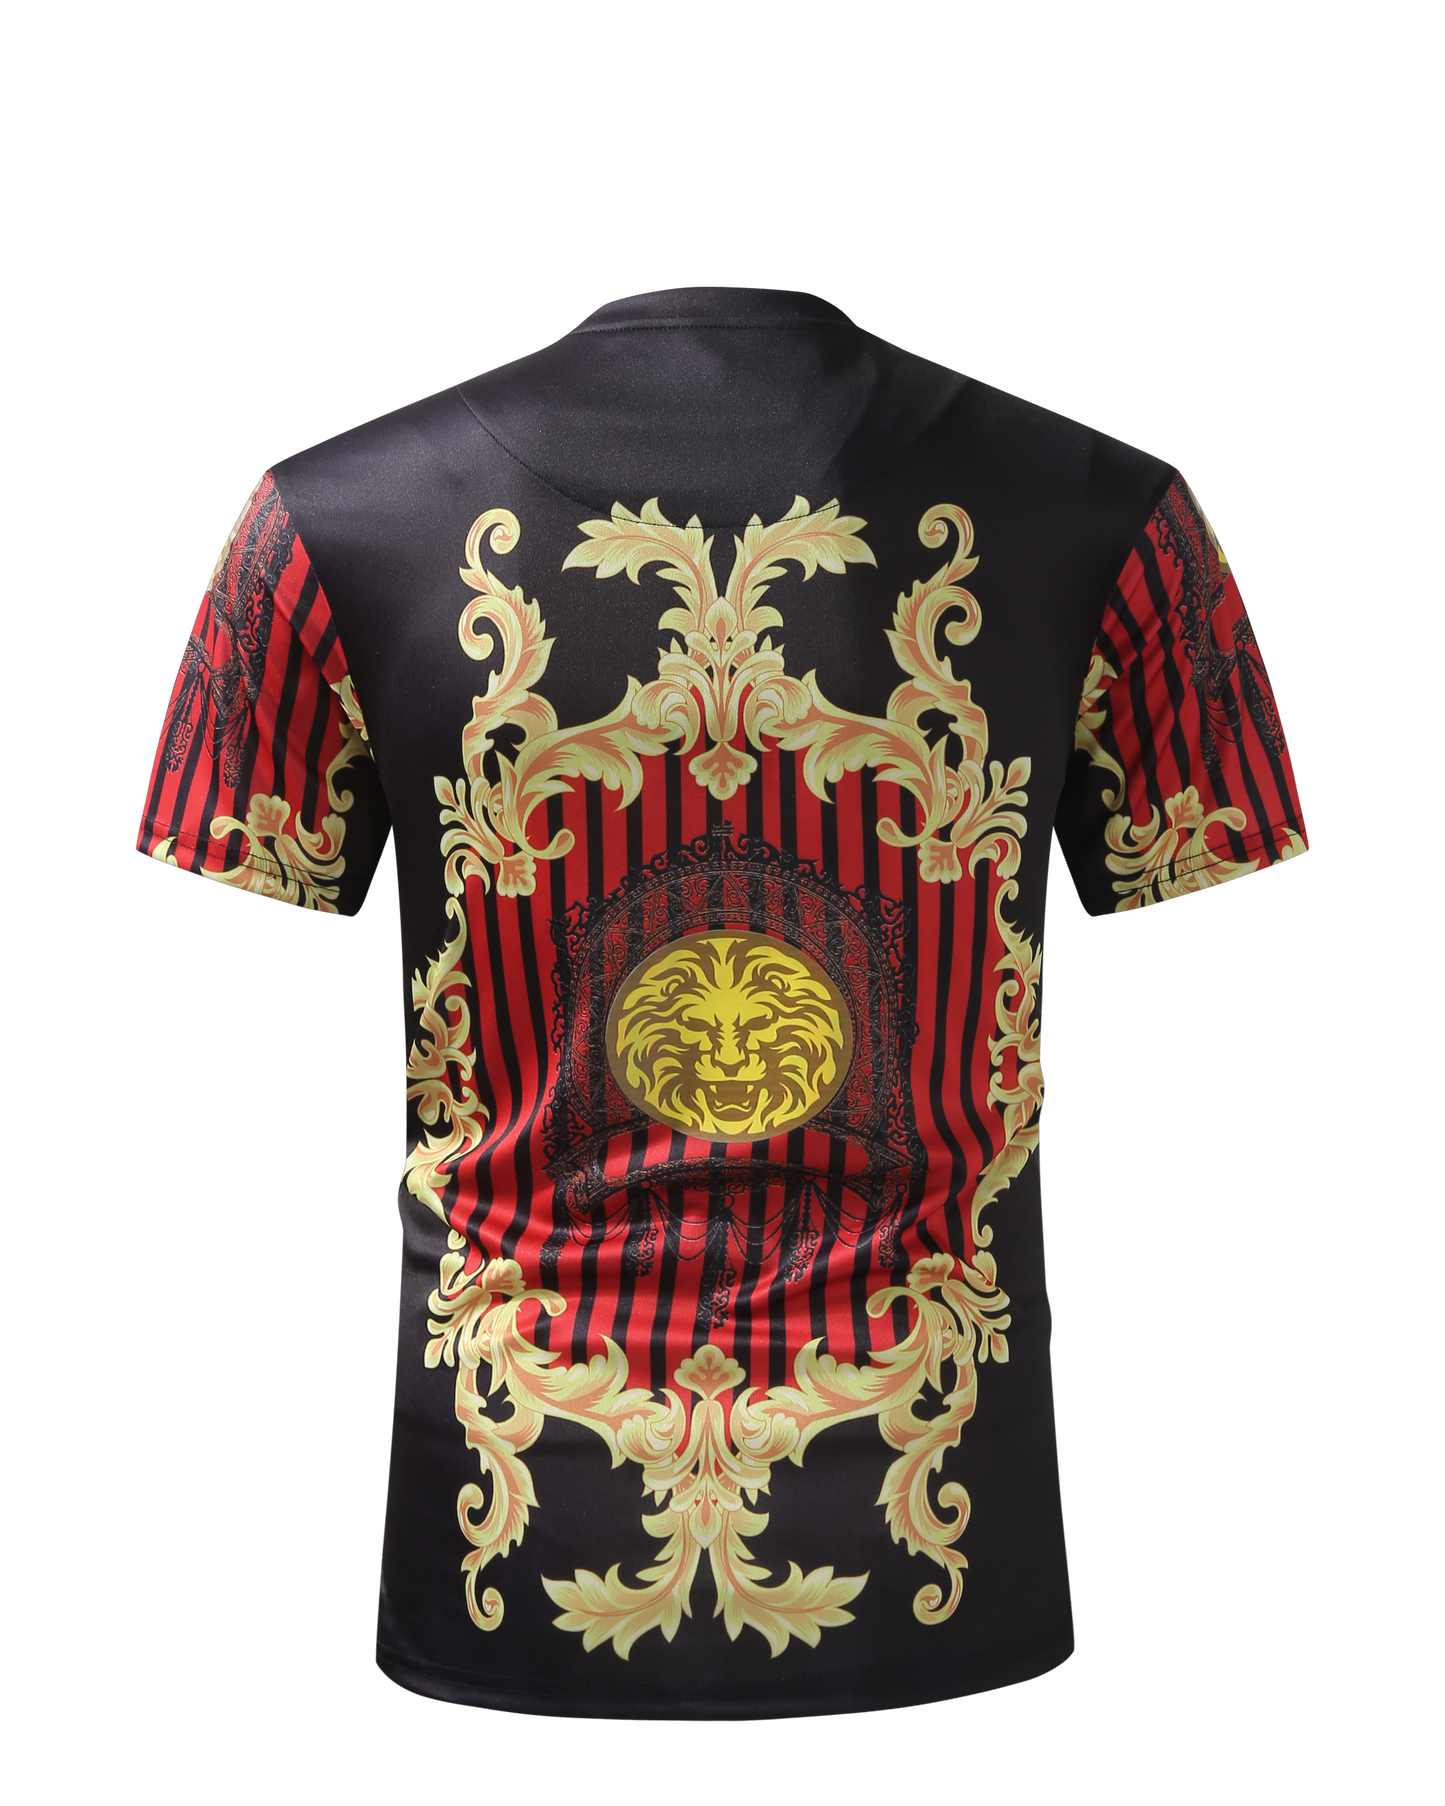 Men PREMIERE SLIM FIT Short Sleeve T SHIRT BLACK RED GOLD KING LION PRINT Designer Shirt